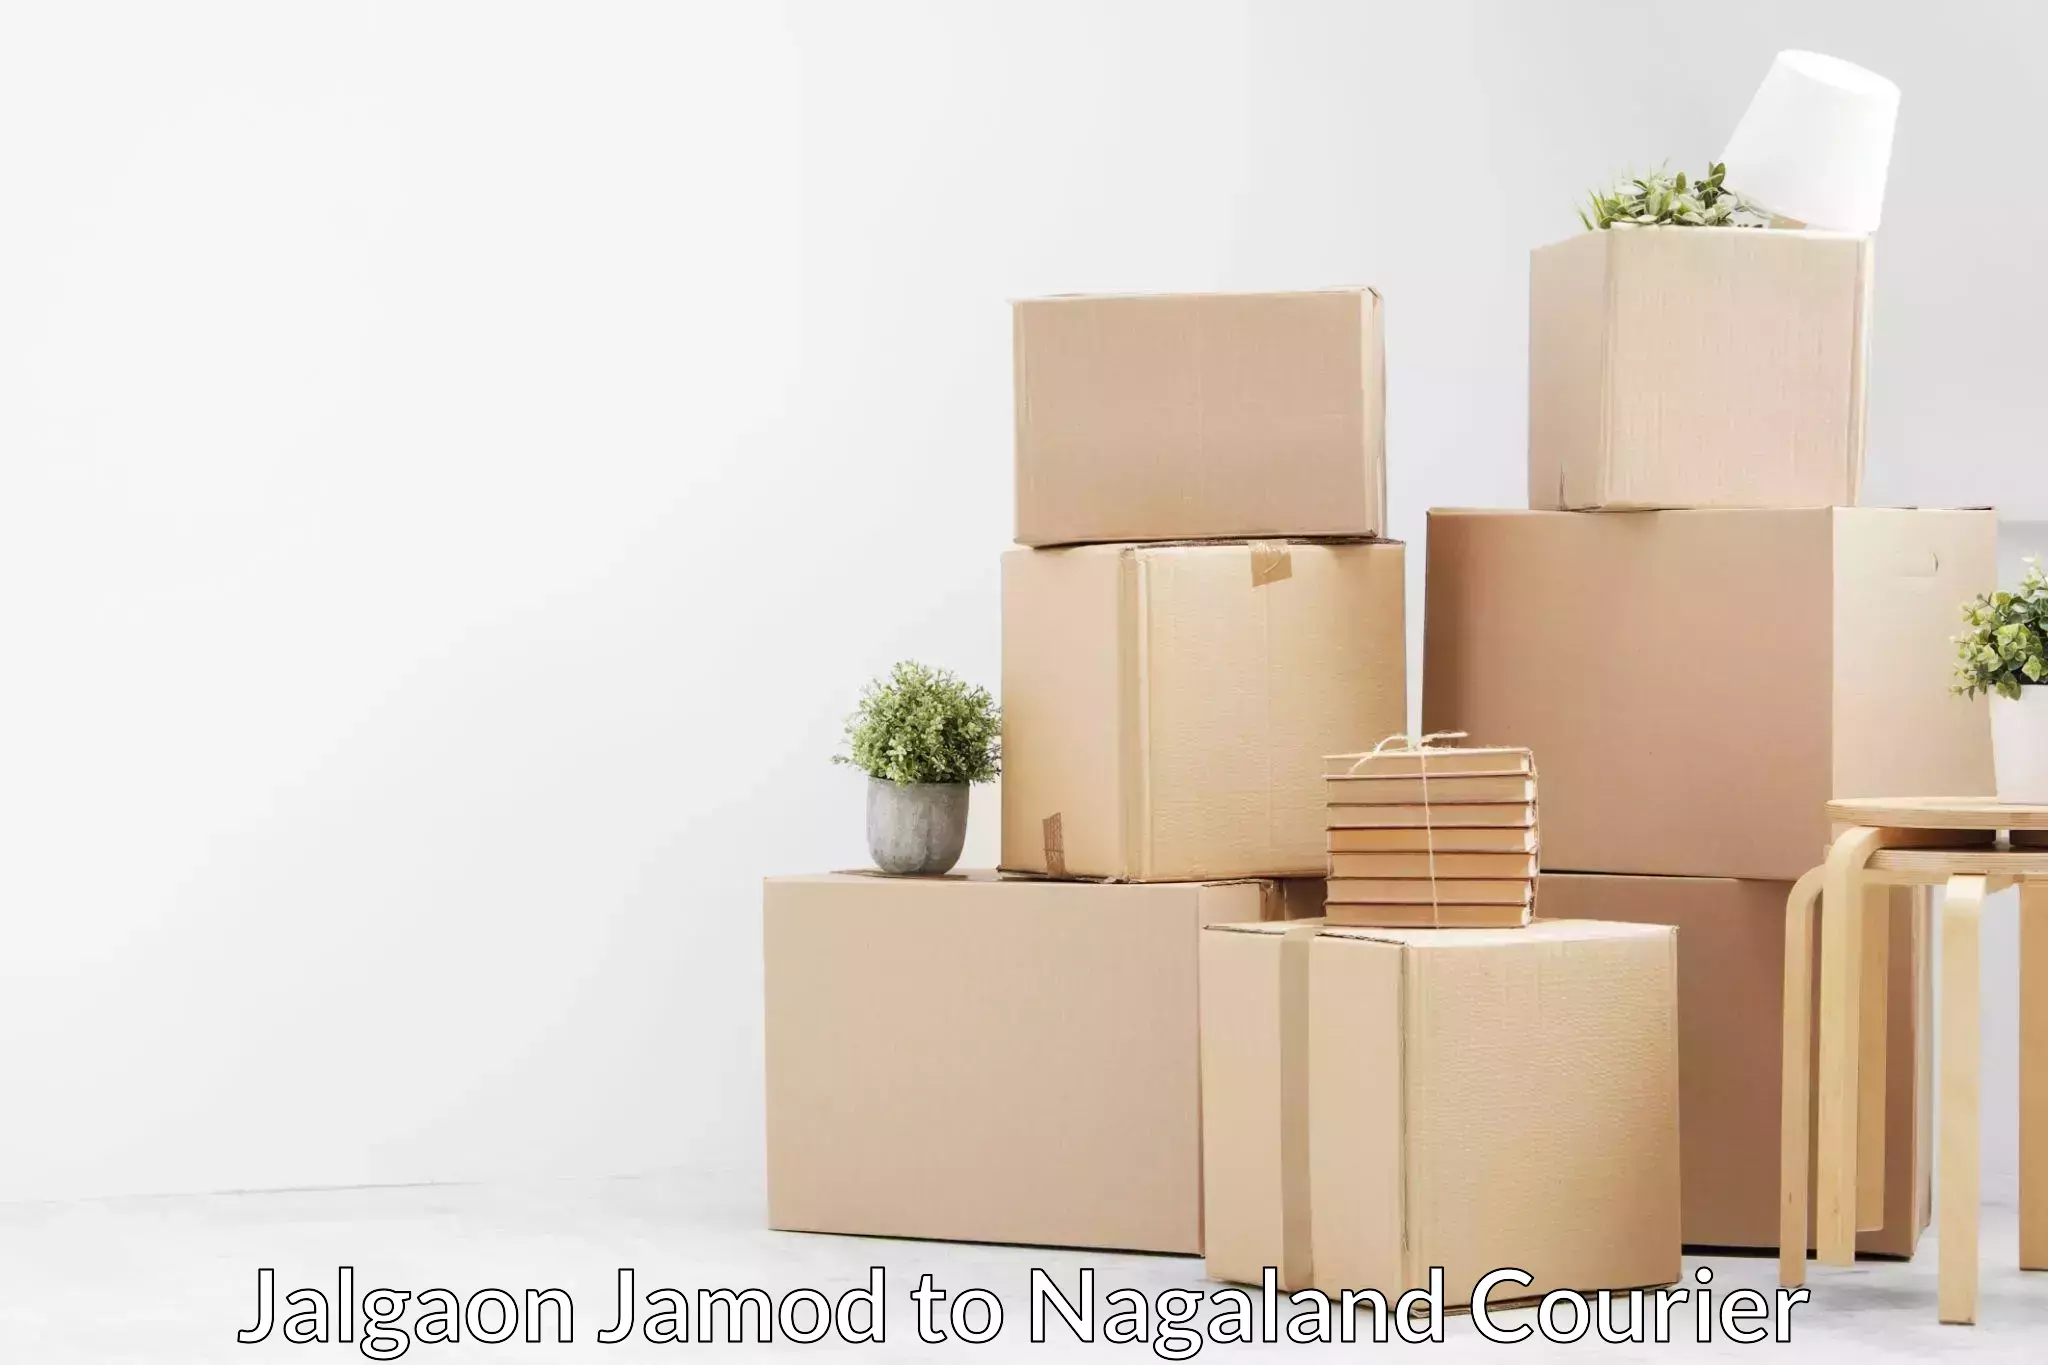 Household moving experts Jalgaon Jamod to Nagaland